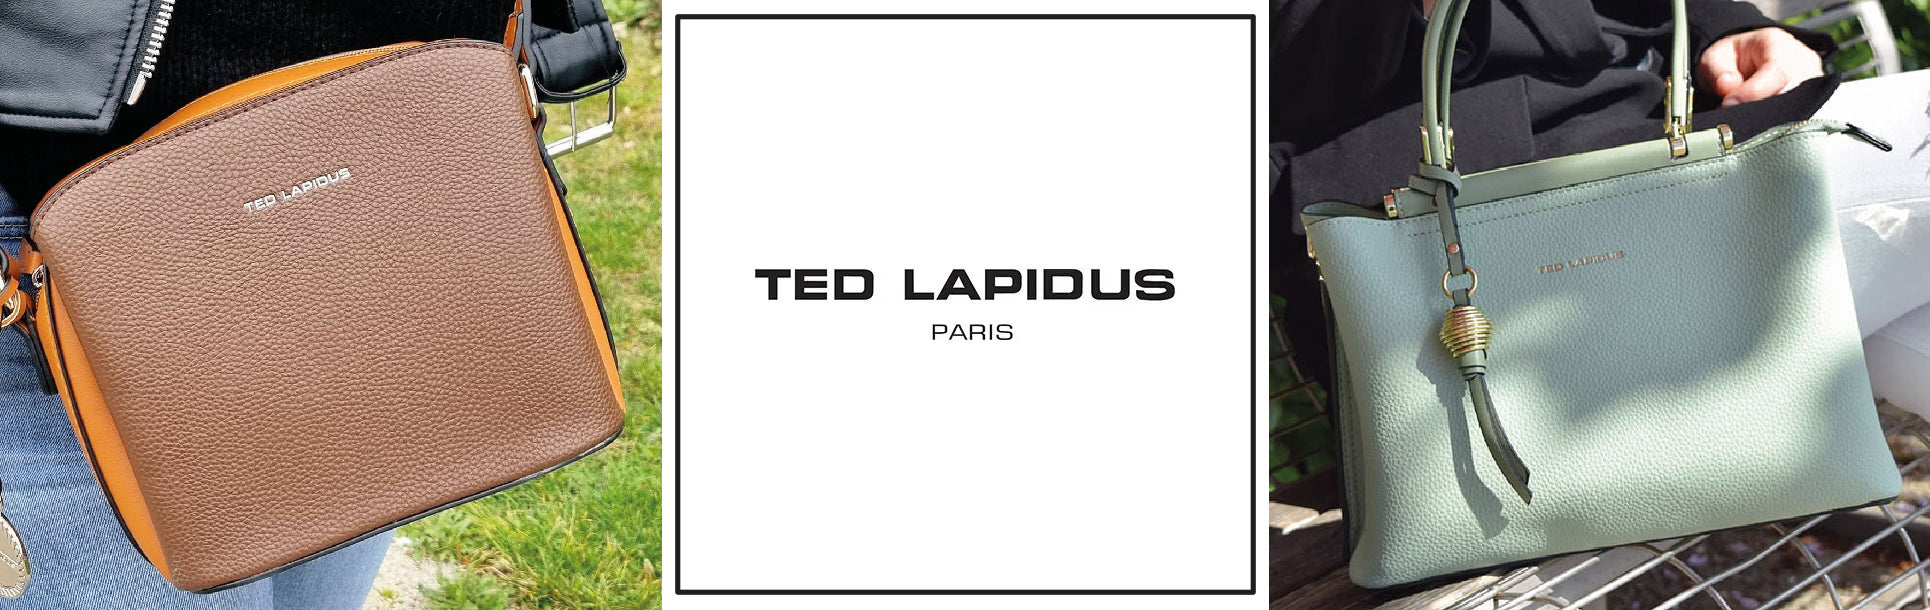 Ted Lapidus Maroquinerie